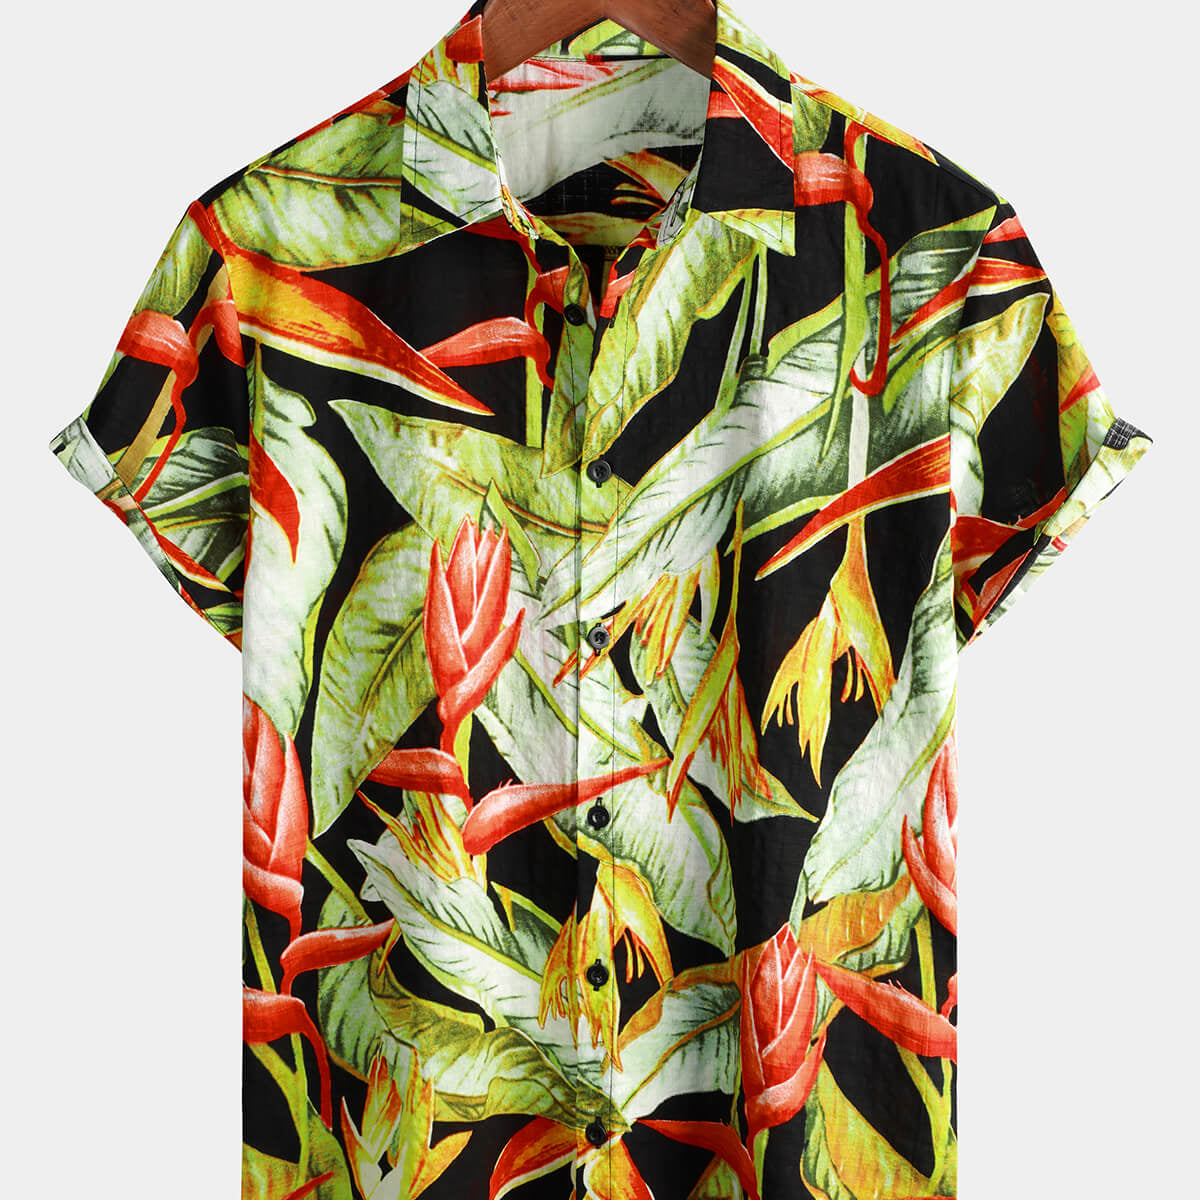 Camisa hawaiana vintage de manga corta de verano con estampado floral tropical para hombre